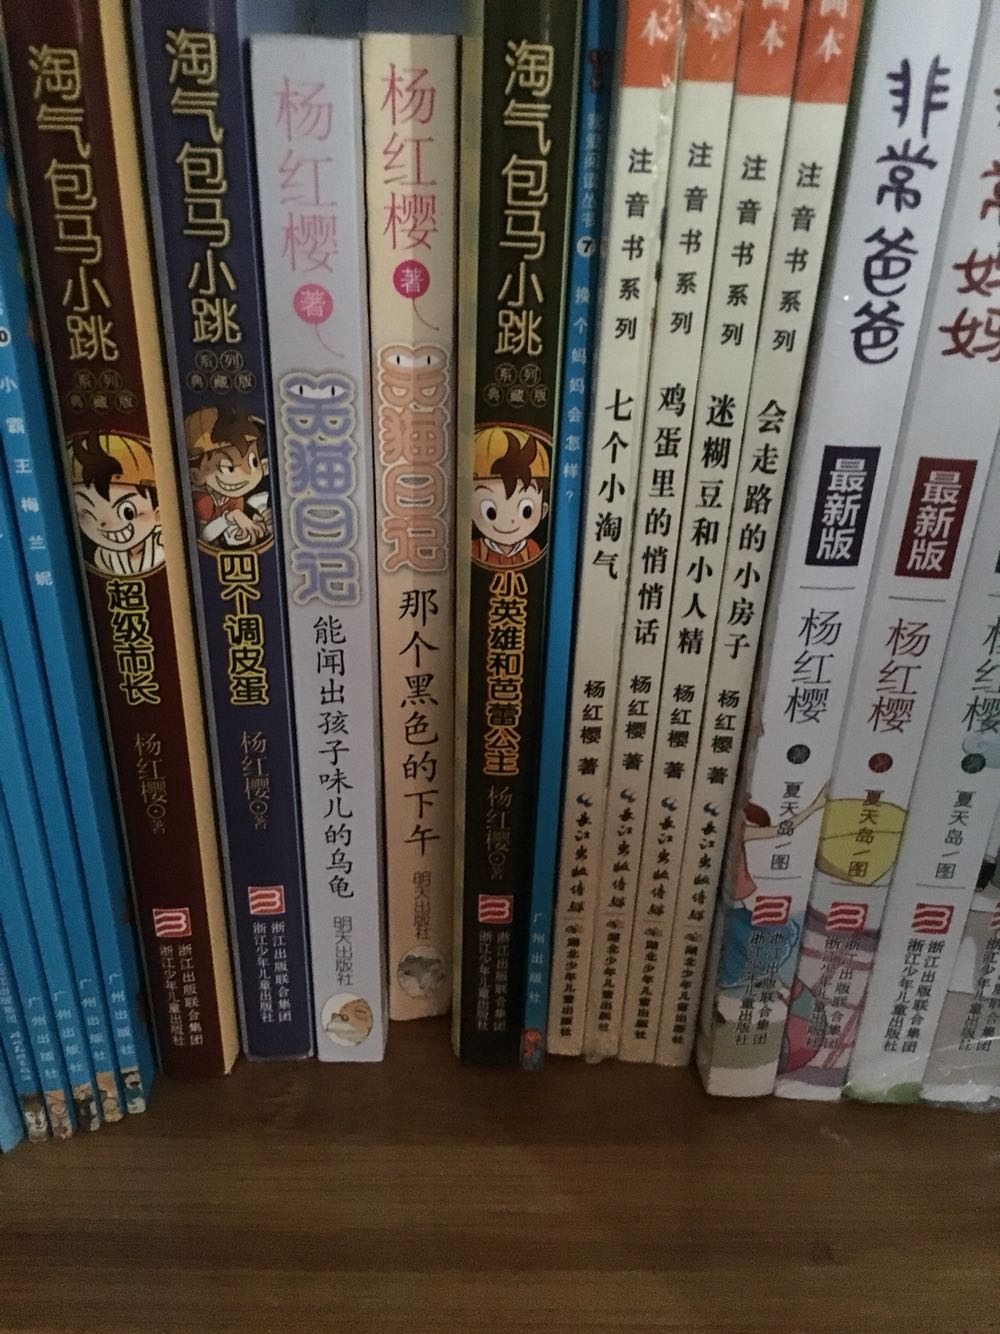 囤货暑假孩子阅读，一直在京豆买图书的